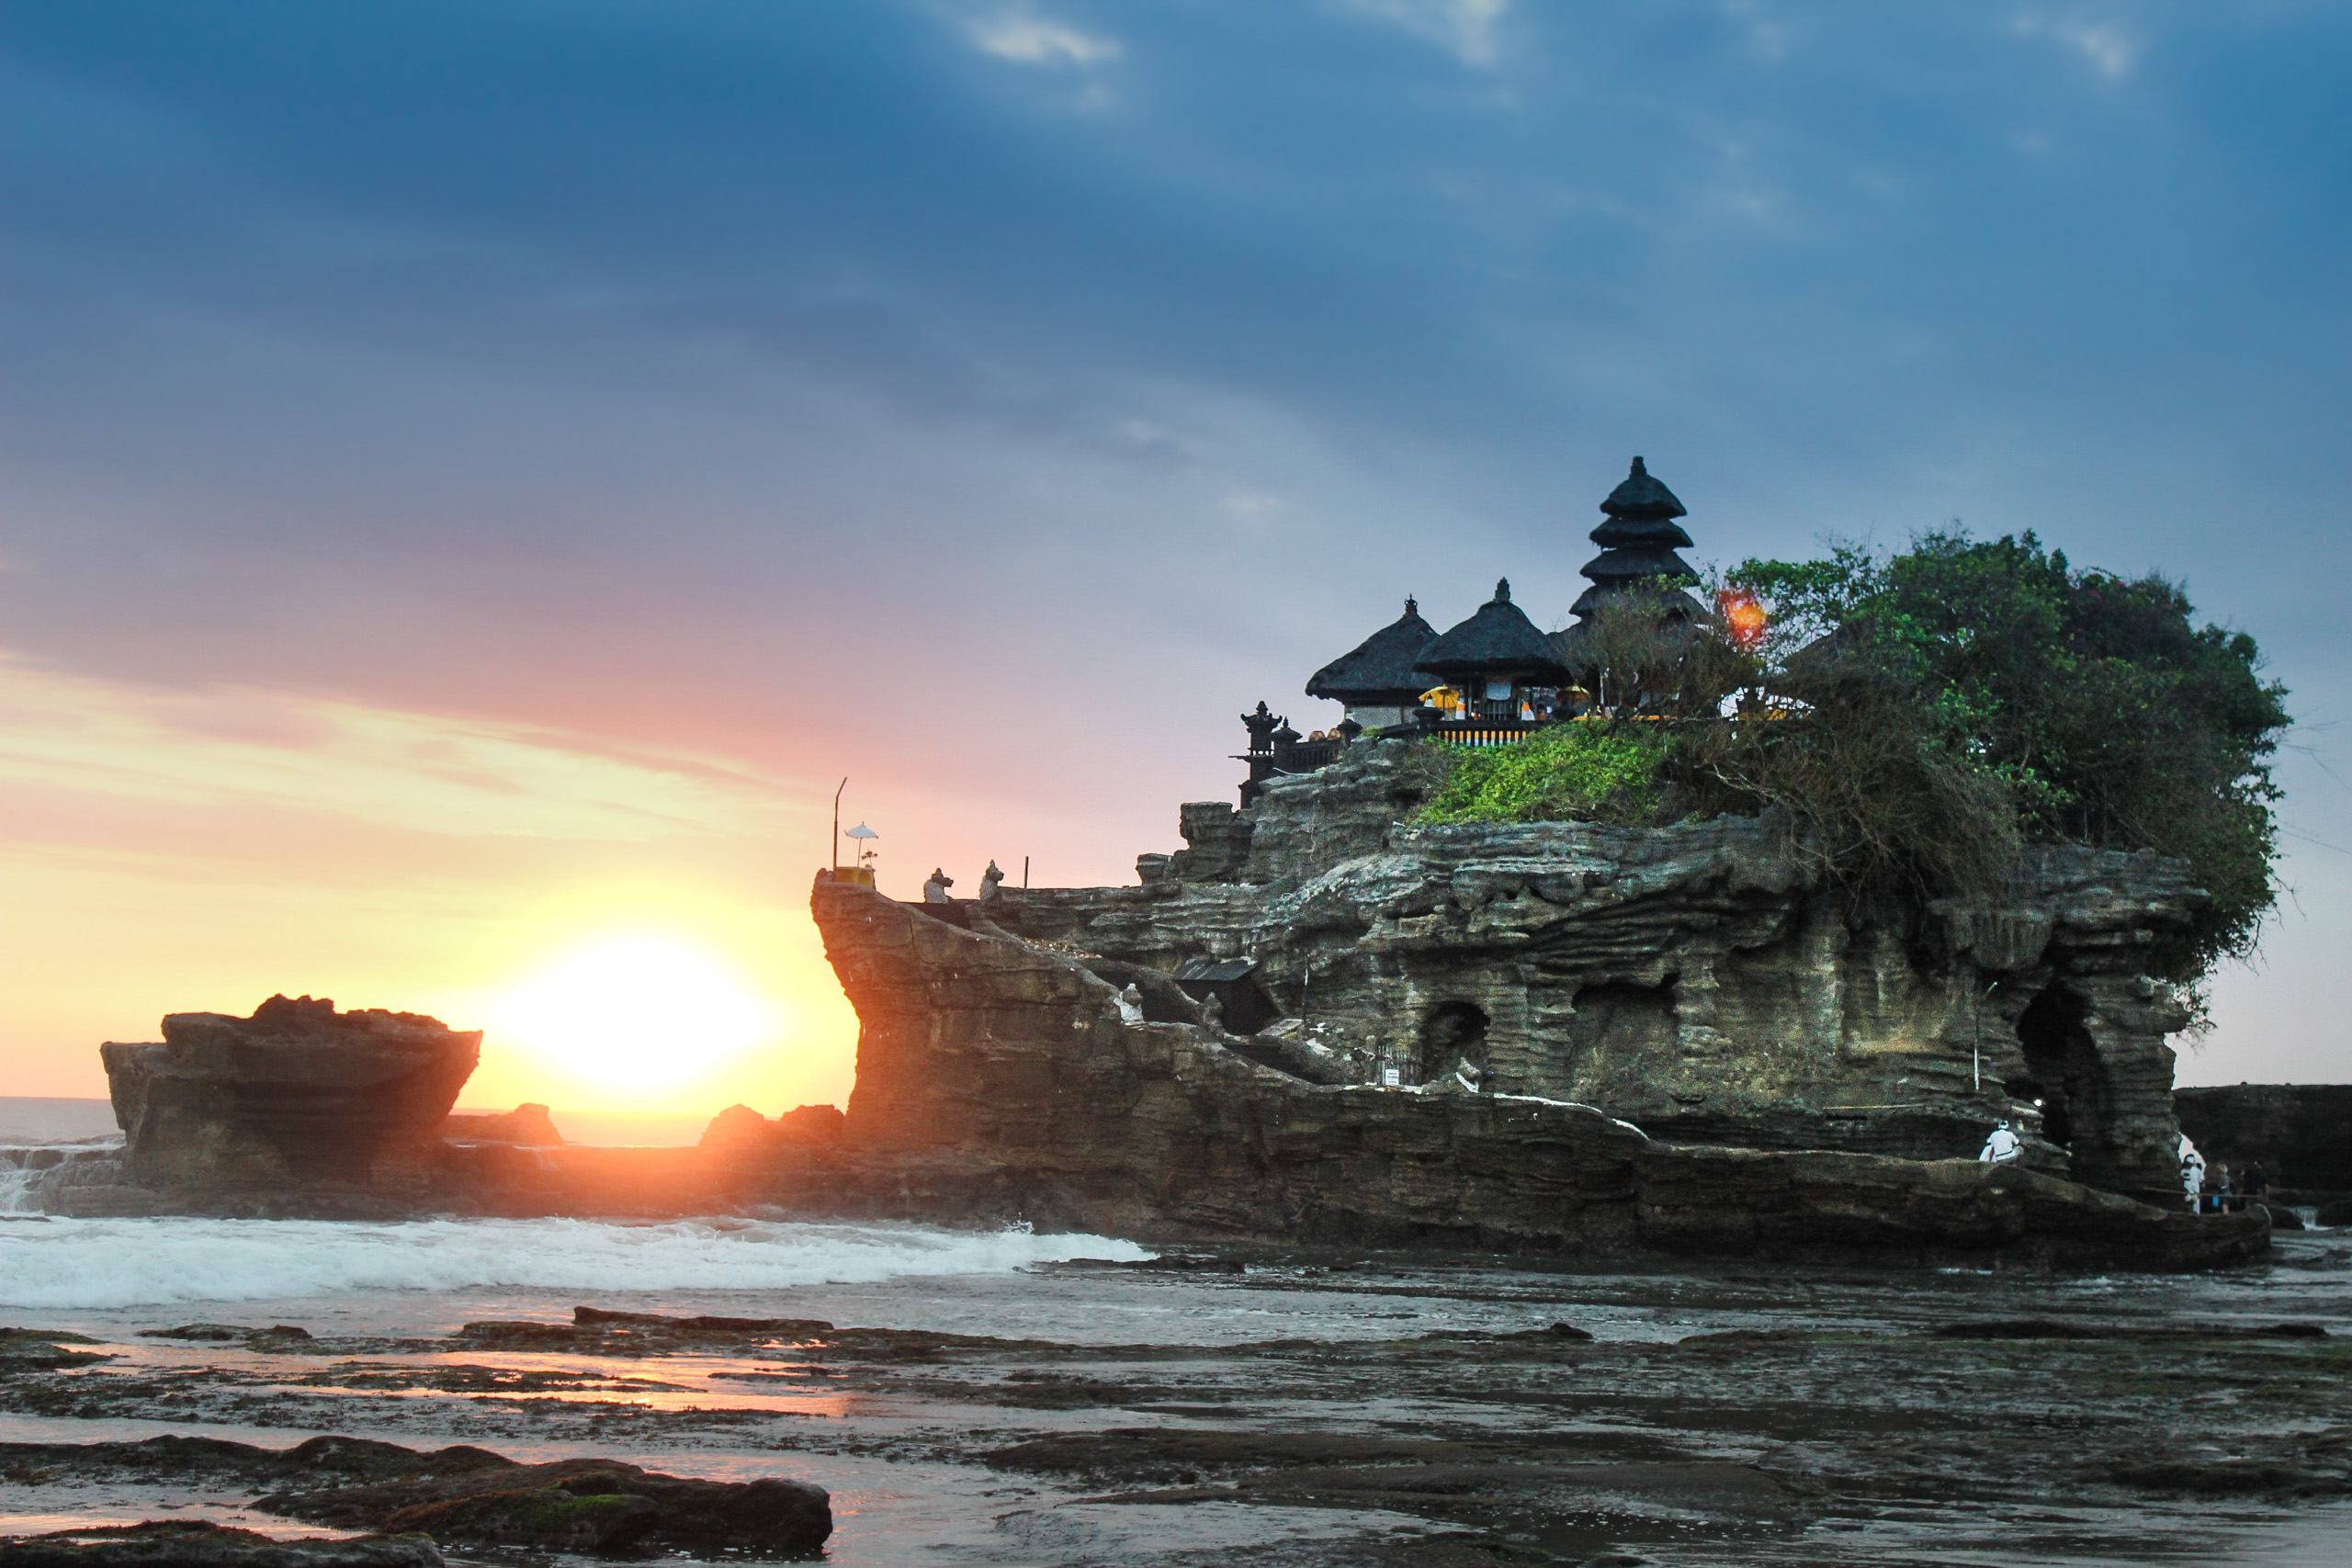 Indonesia thay đổi chiến lược thu hút khách du lịch quốc tế, chú trọng vào du lịch bền vững